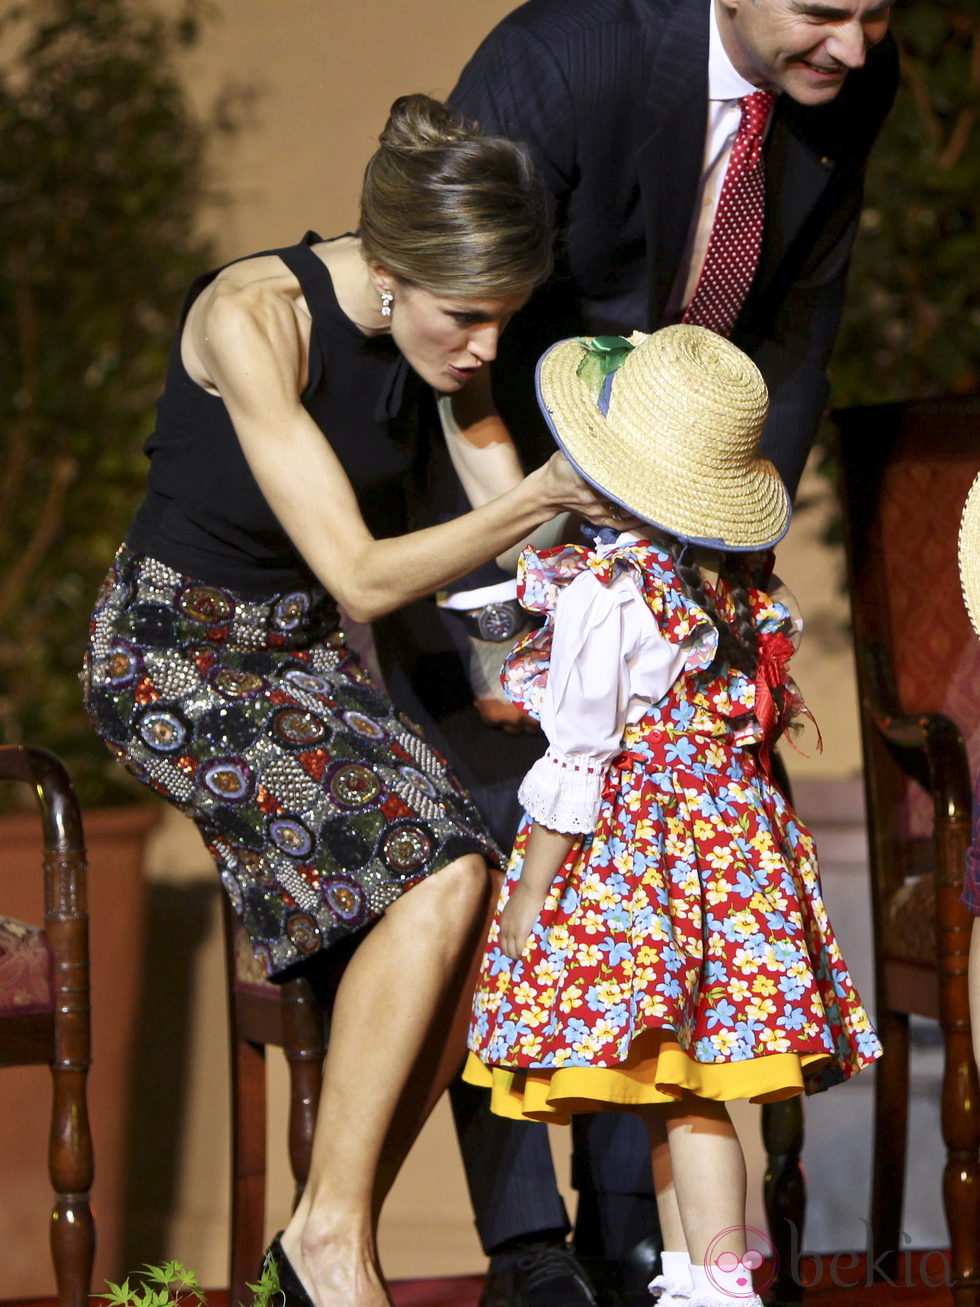 La Princesa Letizia, cariñosa con una niña en una cena de gala en Chile